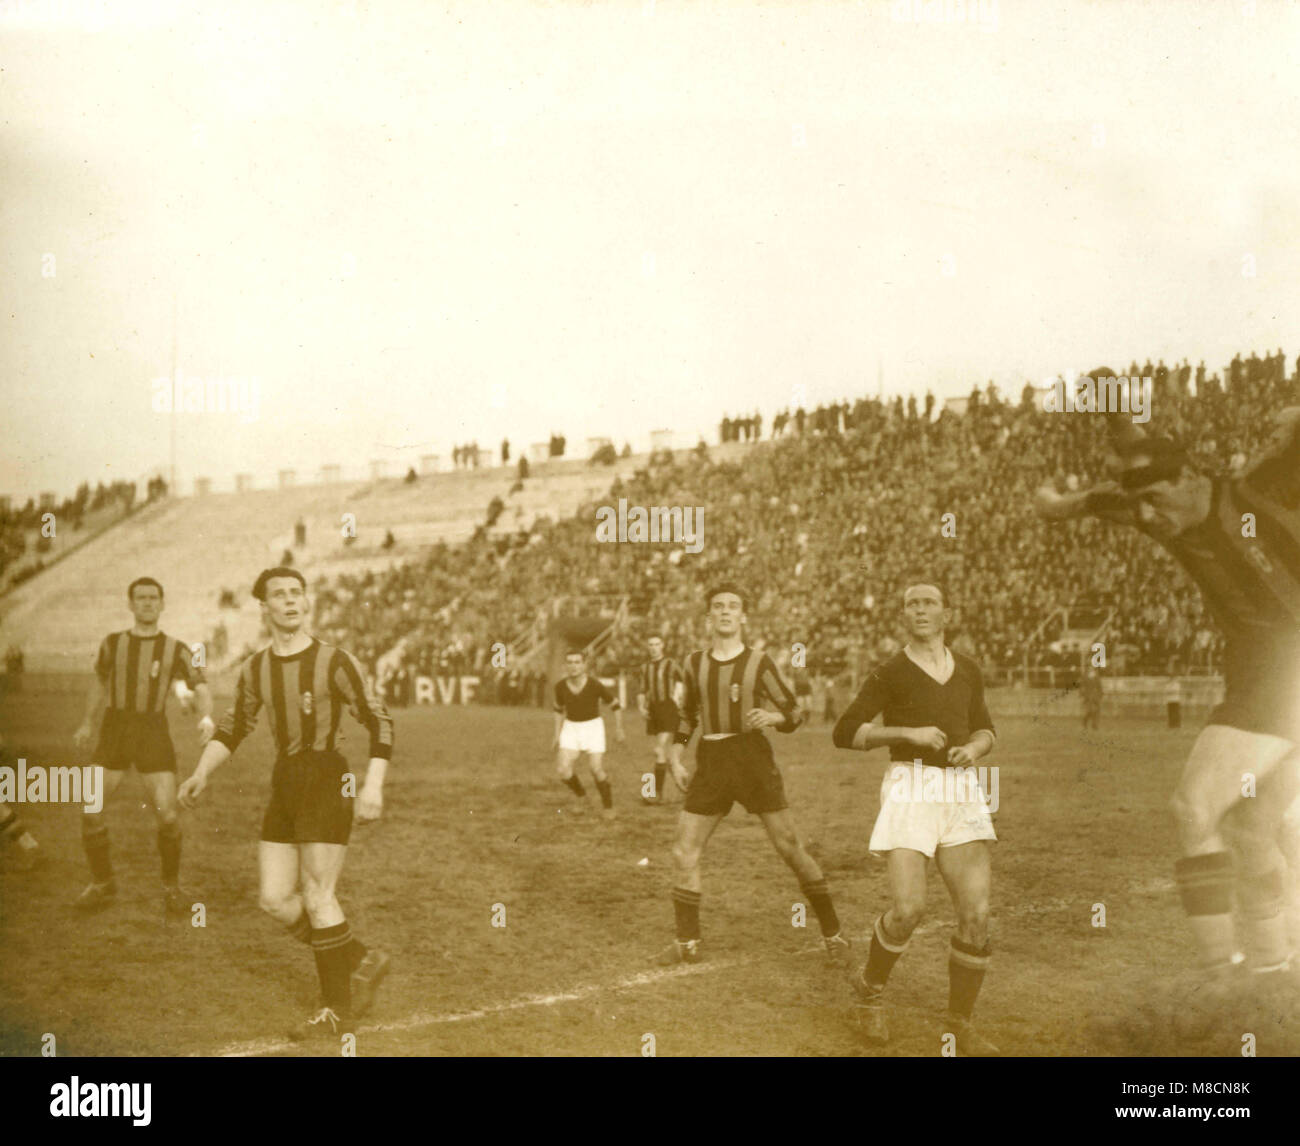 Ambrosiana Inter football team playing soccer, Italy 1930s Stock Photo